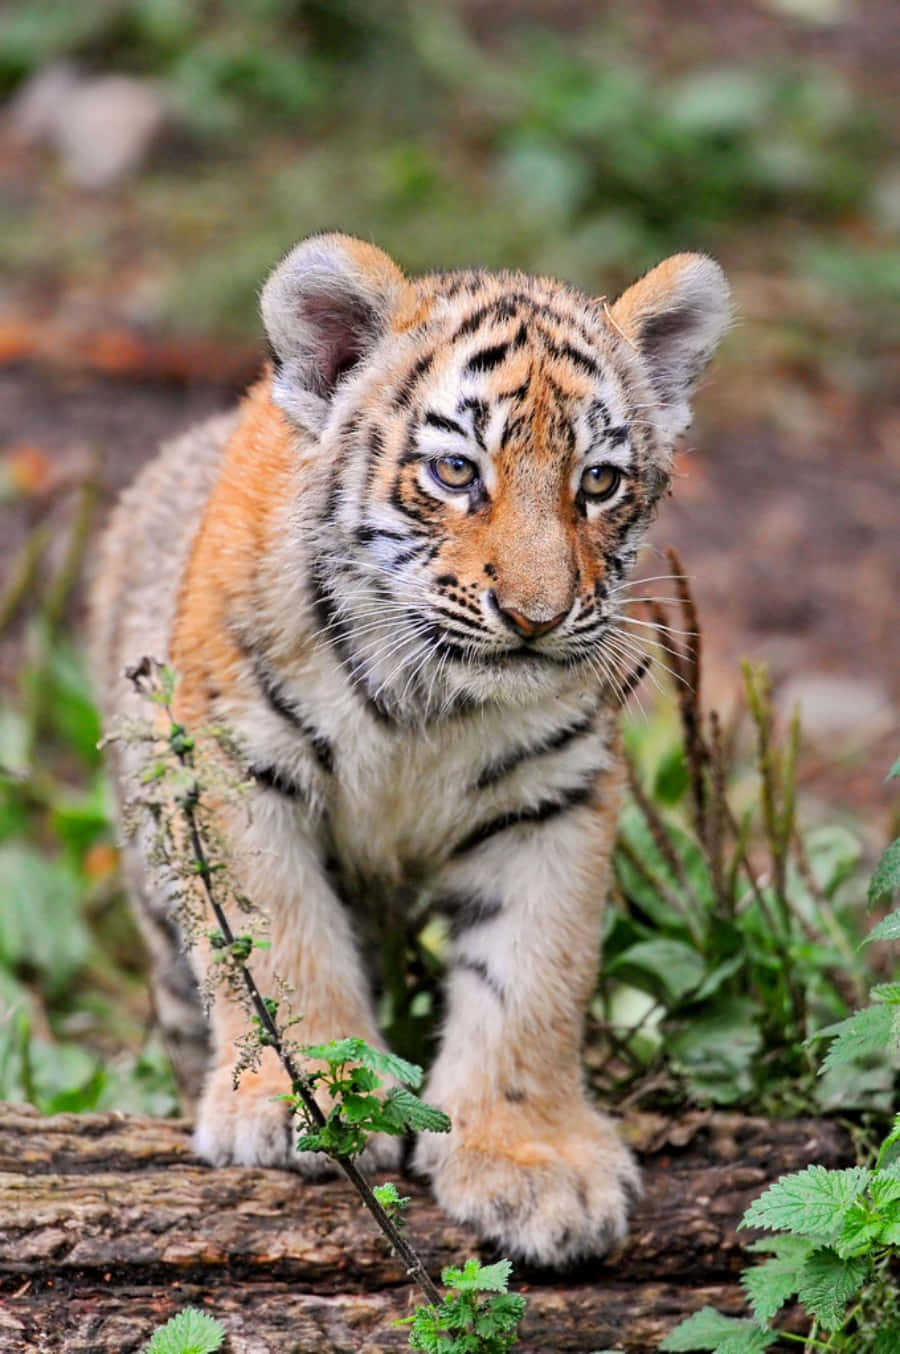 Adorable Baby Tiger